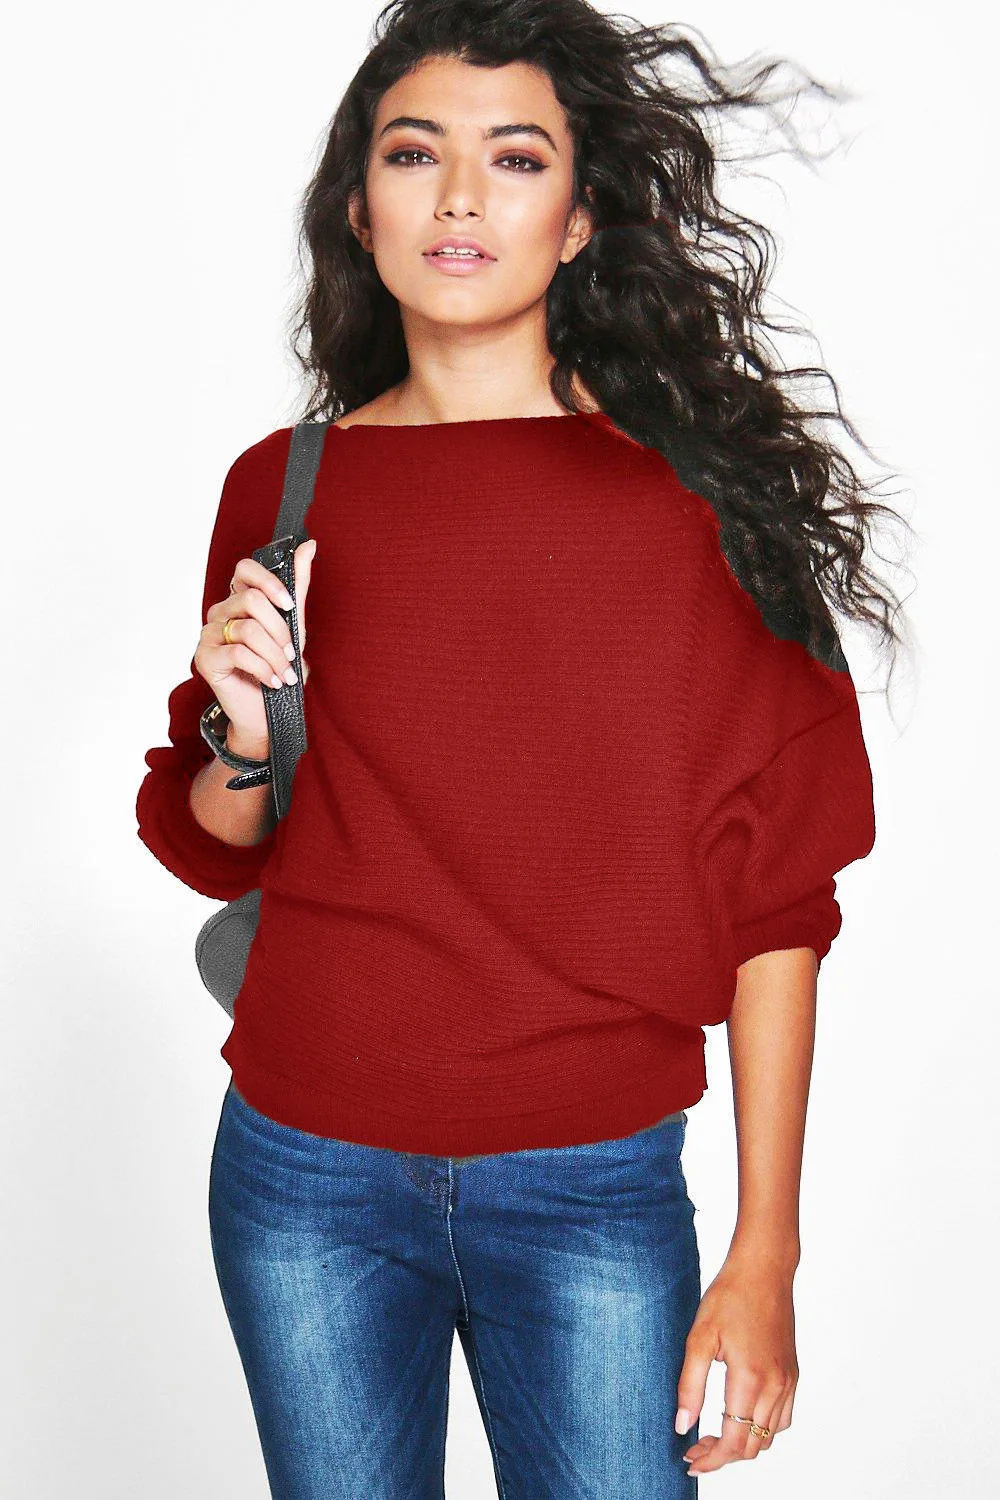 Jaycosin модные Повседневное женские блузы с длинным рукавом свитер "летучая мышь", стильные, удобные, элегантные, мягкие, прочные, Цвет Джемперы Топы трикотажные изделия - Цвет: Красный